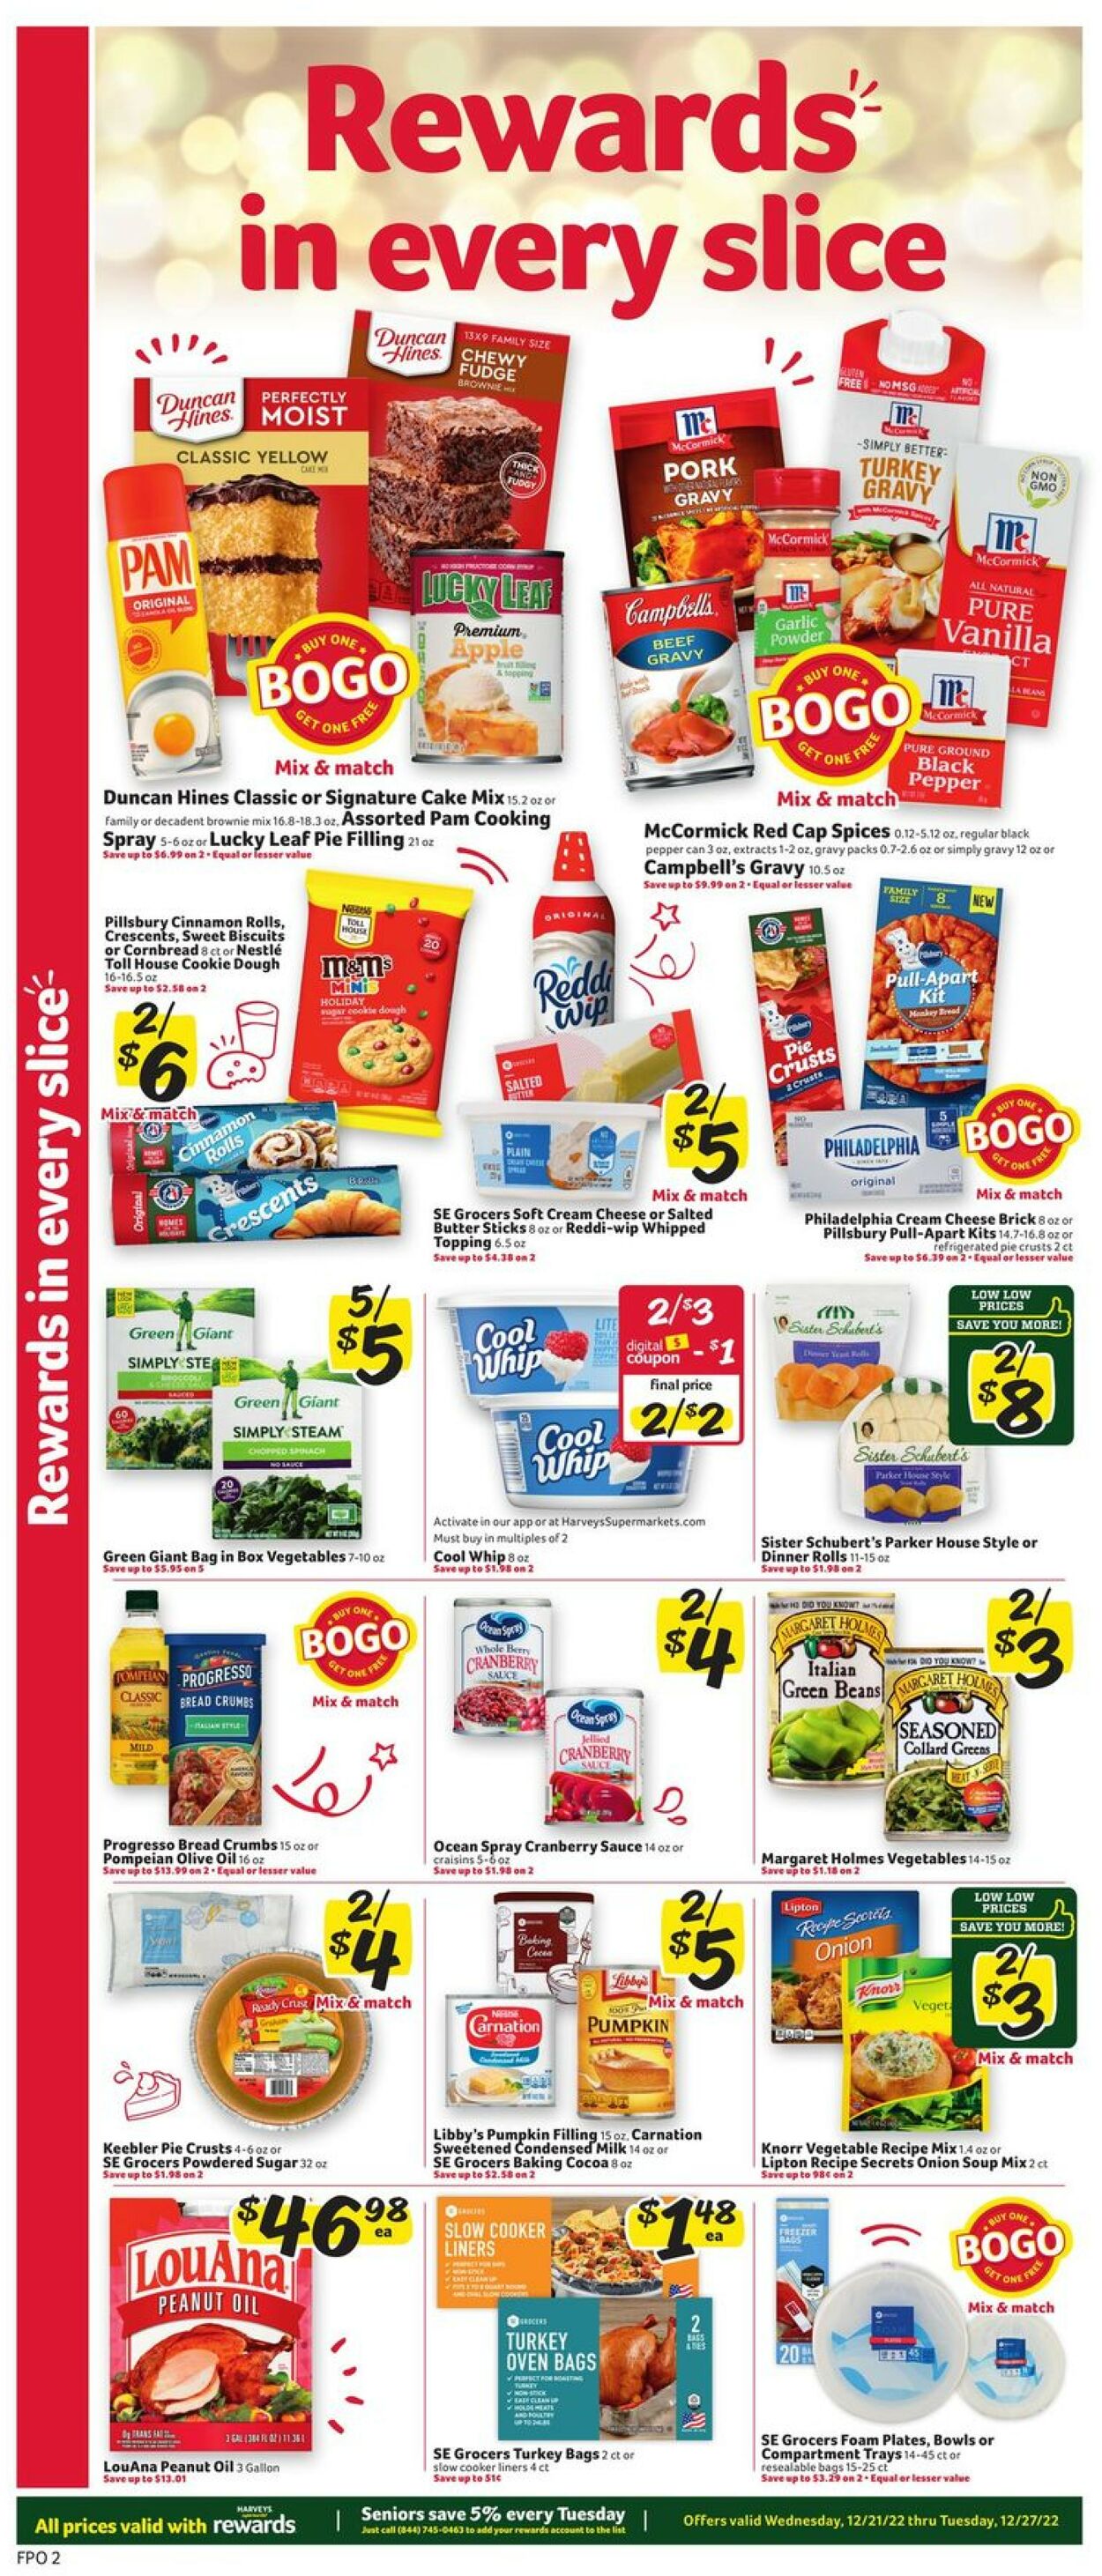 Catalogue Harveys Supermarket from 12/21/2022